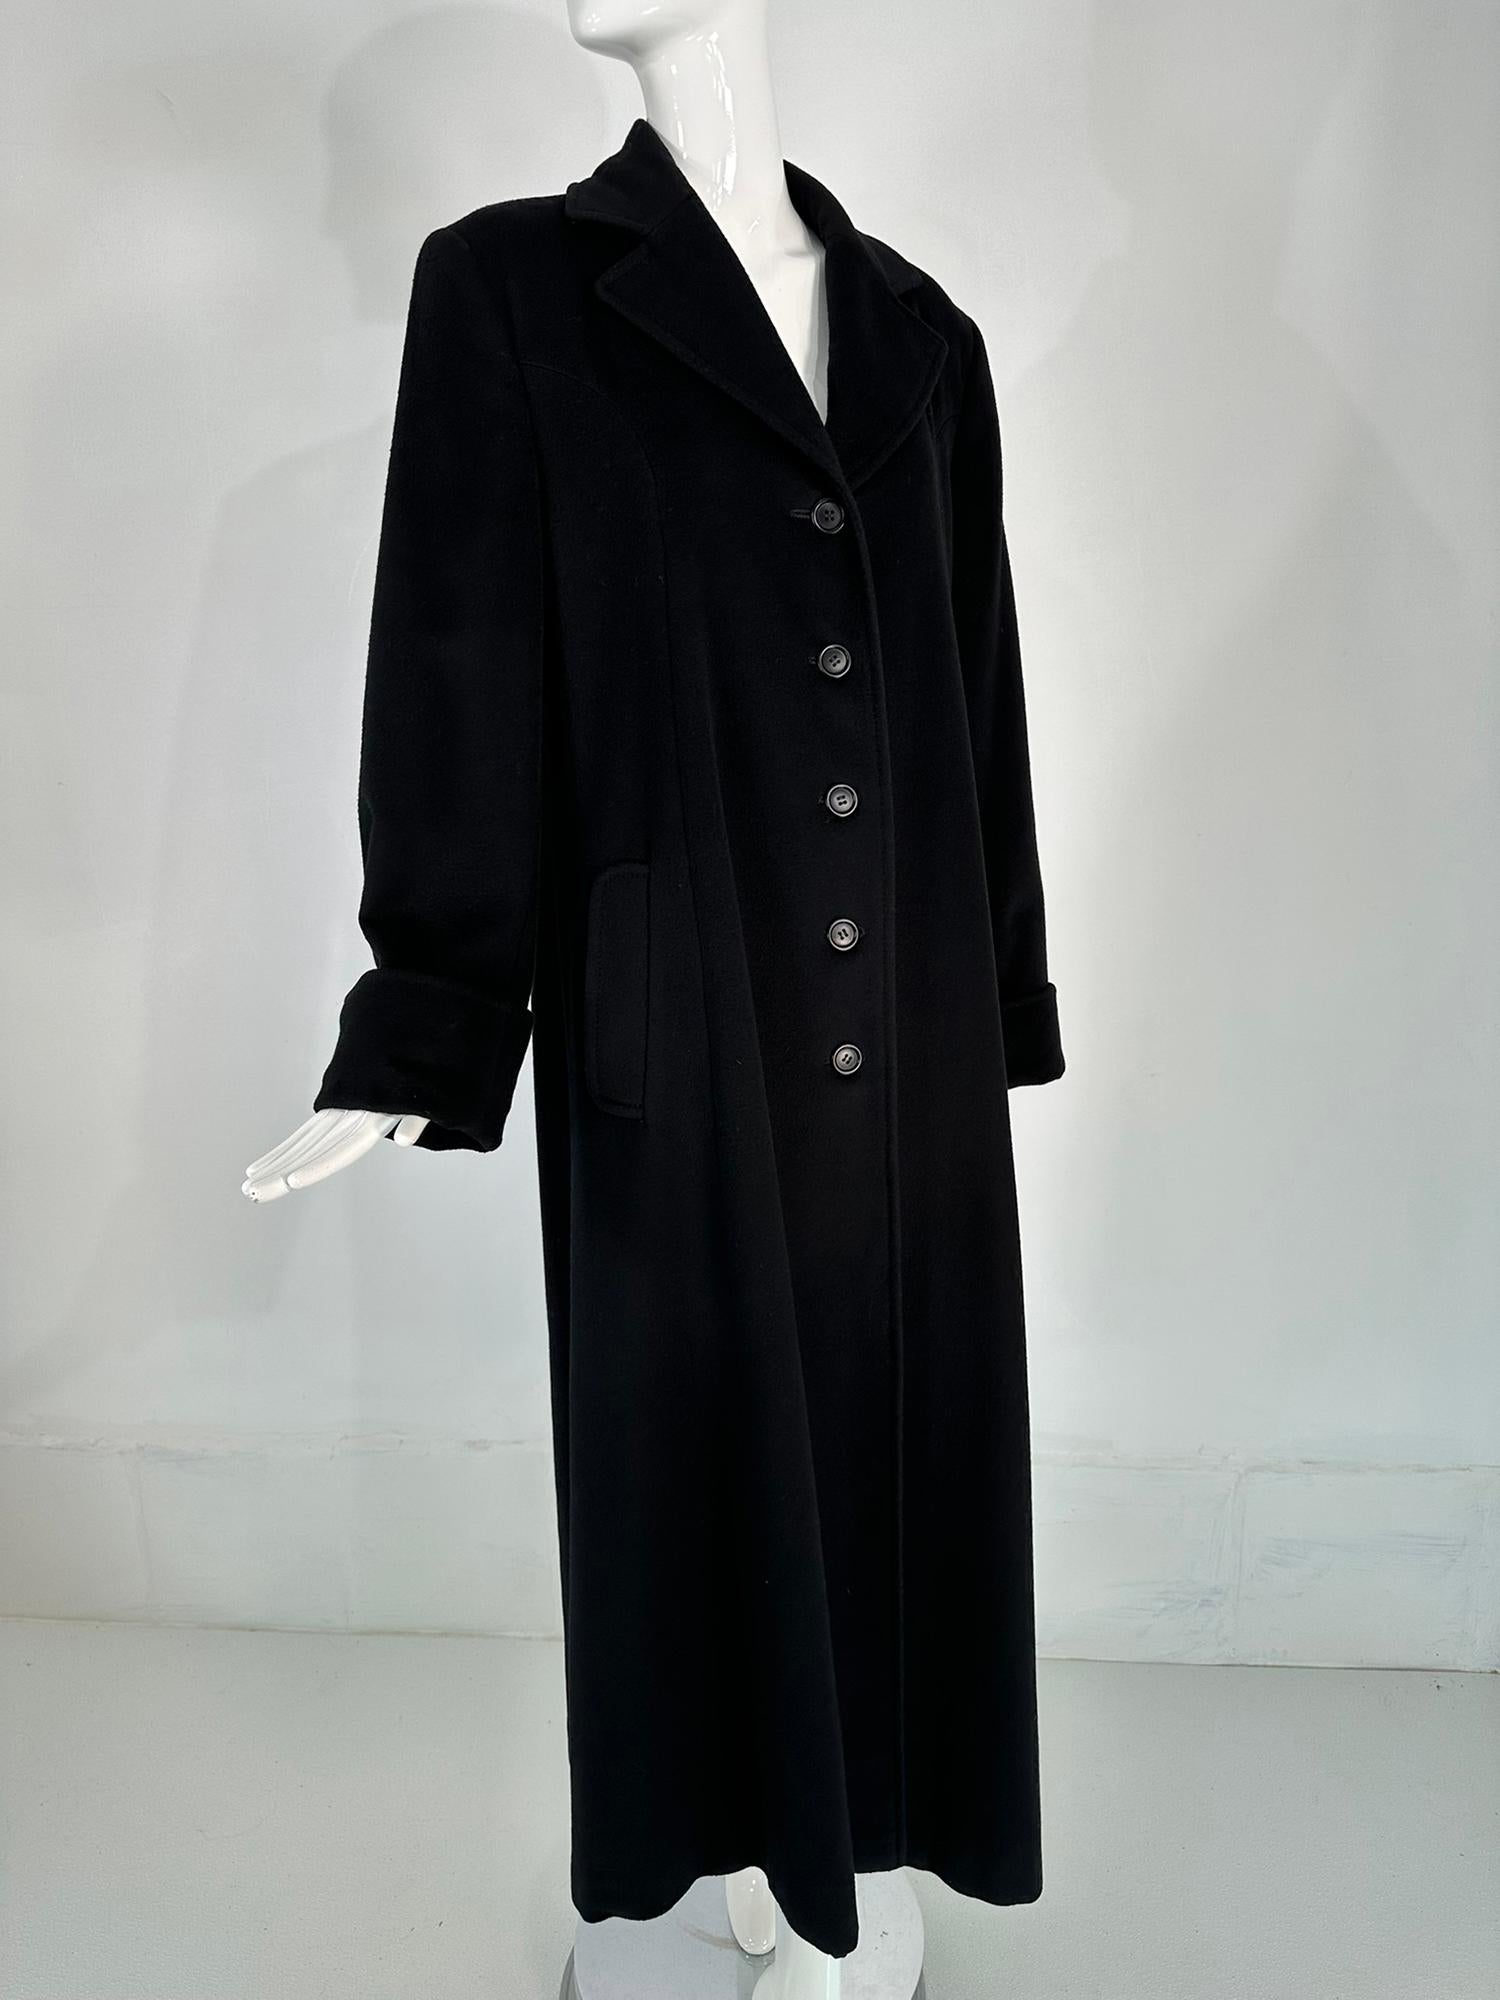 Schwarzer Kaschmir-Mantel von Bergdorf Goodman aus den 1990er Jahren. Ein aussagekräftiger Mantel aus luxuriösem schwarzem Kaschmir. Der einreihige Mantel hat ein gekerbtes Revers, die langen Ärmel haben tiefe Umschlagmanschetten. Es gibt schräge